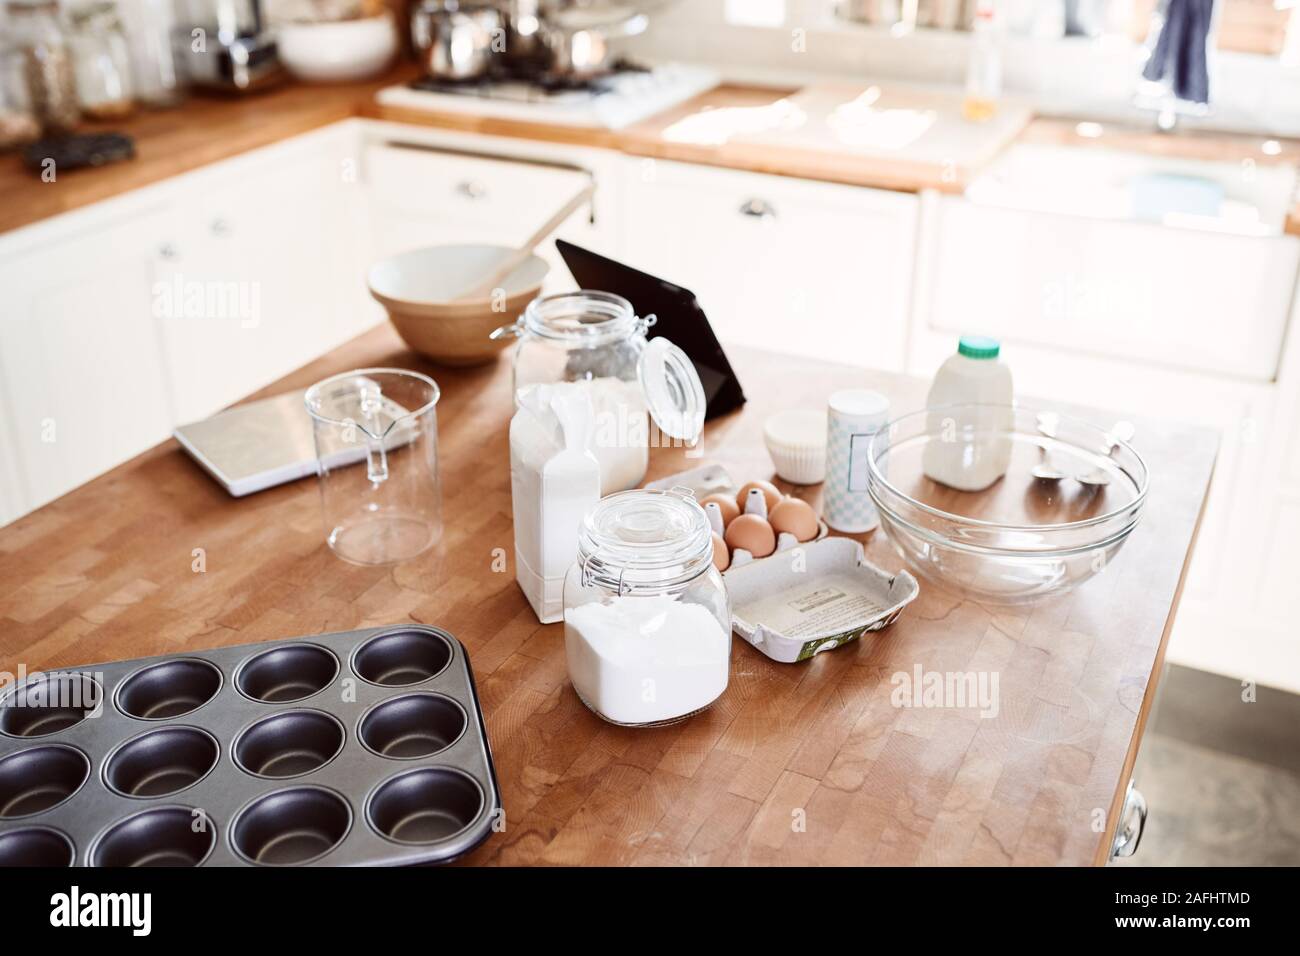 Ingredienti e utensili da forno steso sulla superficie di lavoro in cucina Foto Stock